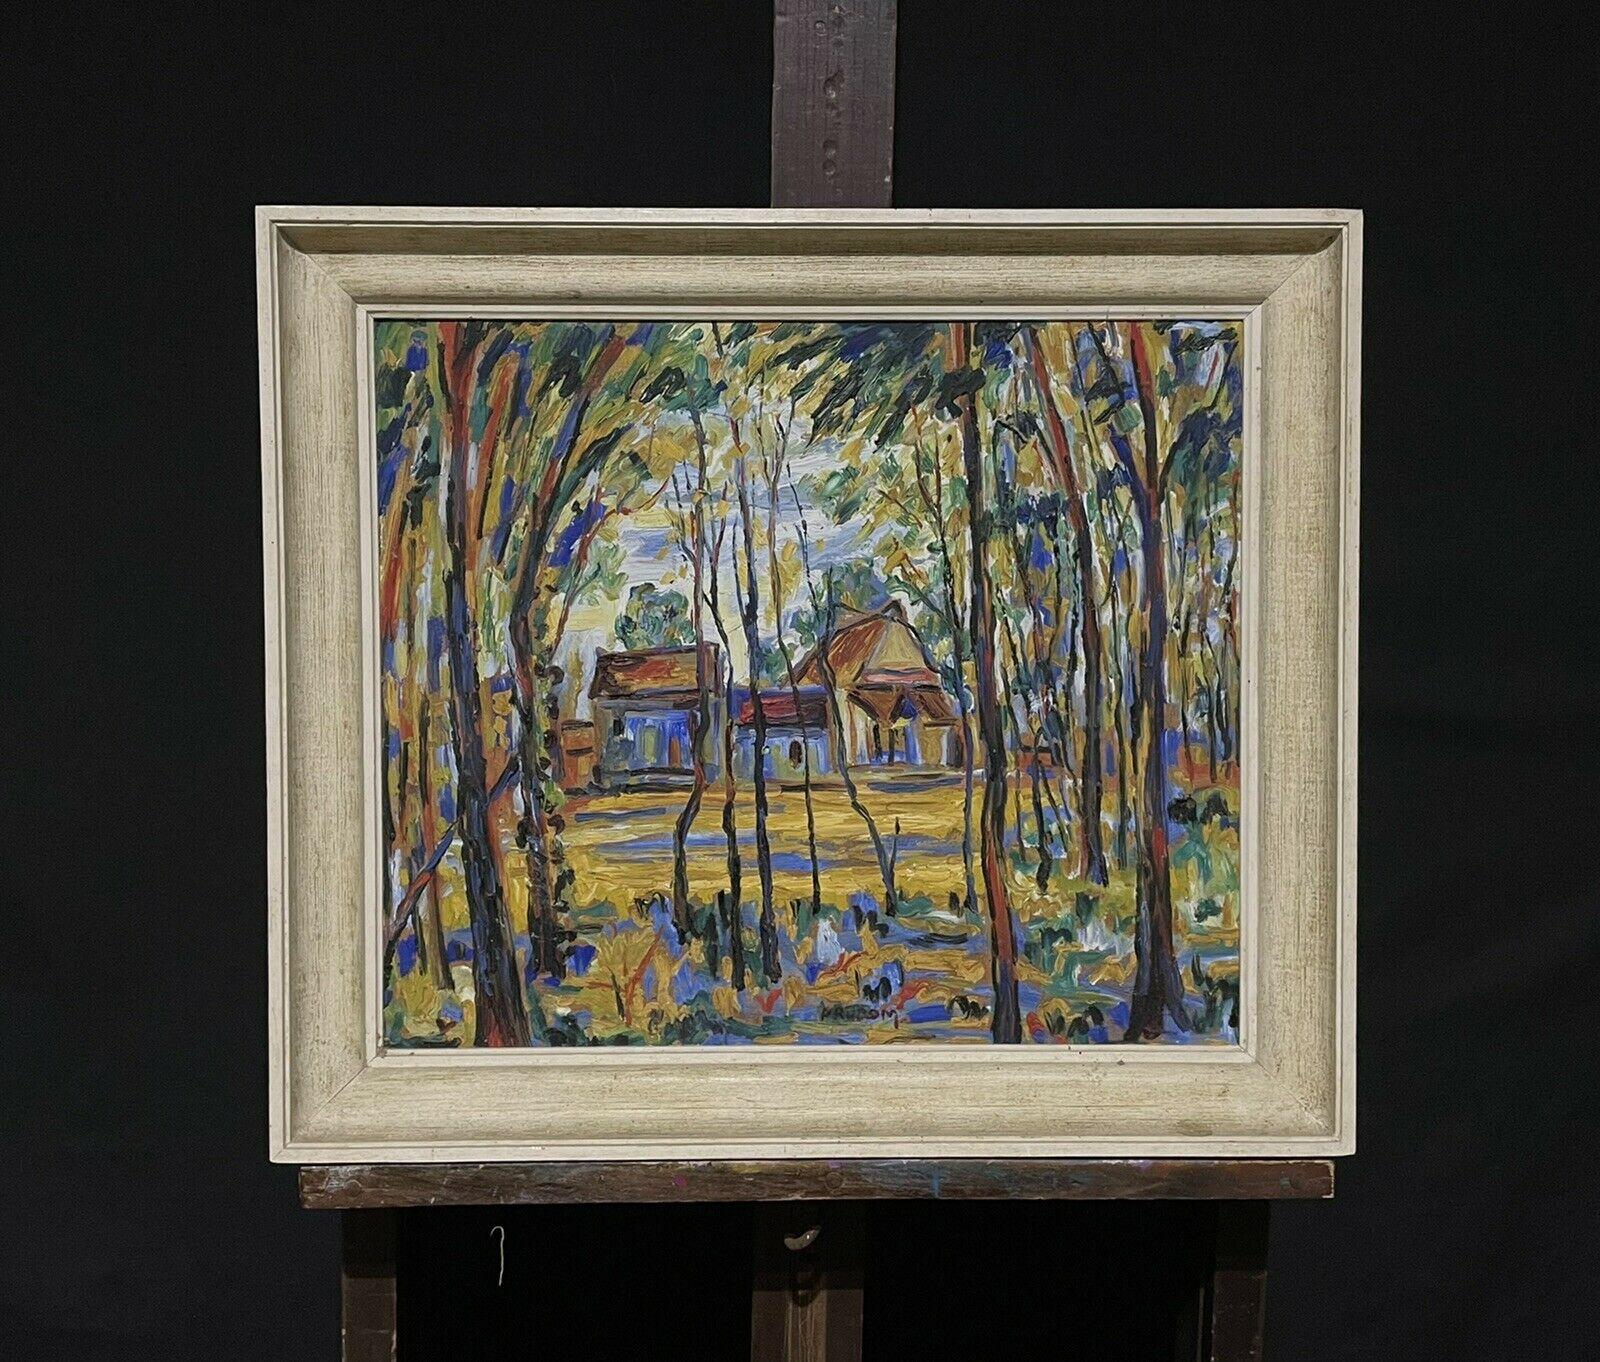 Tableau fauviste français du milieu du 20e siècle, vue de paysage du sud de la France, signé  - Painting de Post-Impressionist